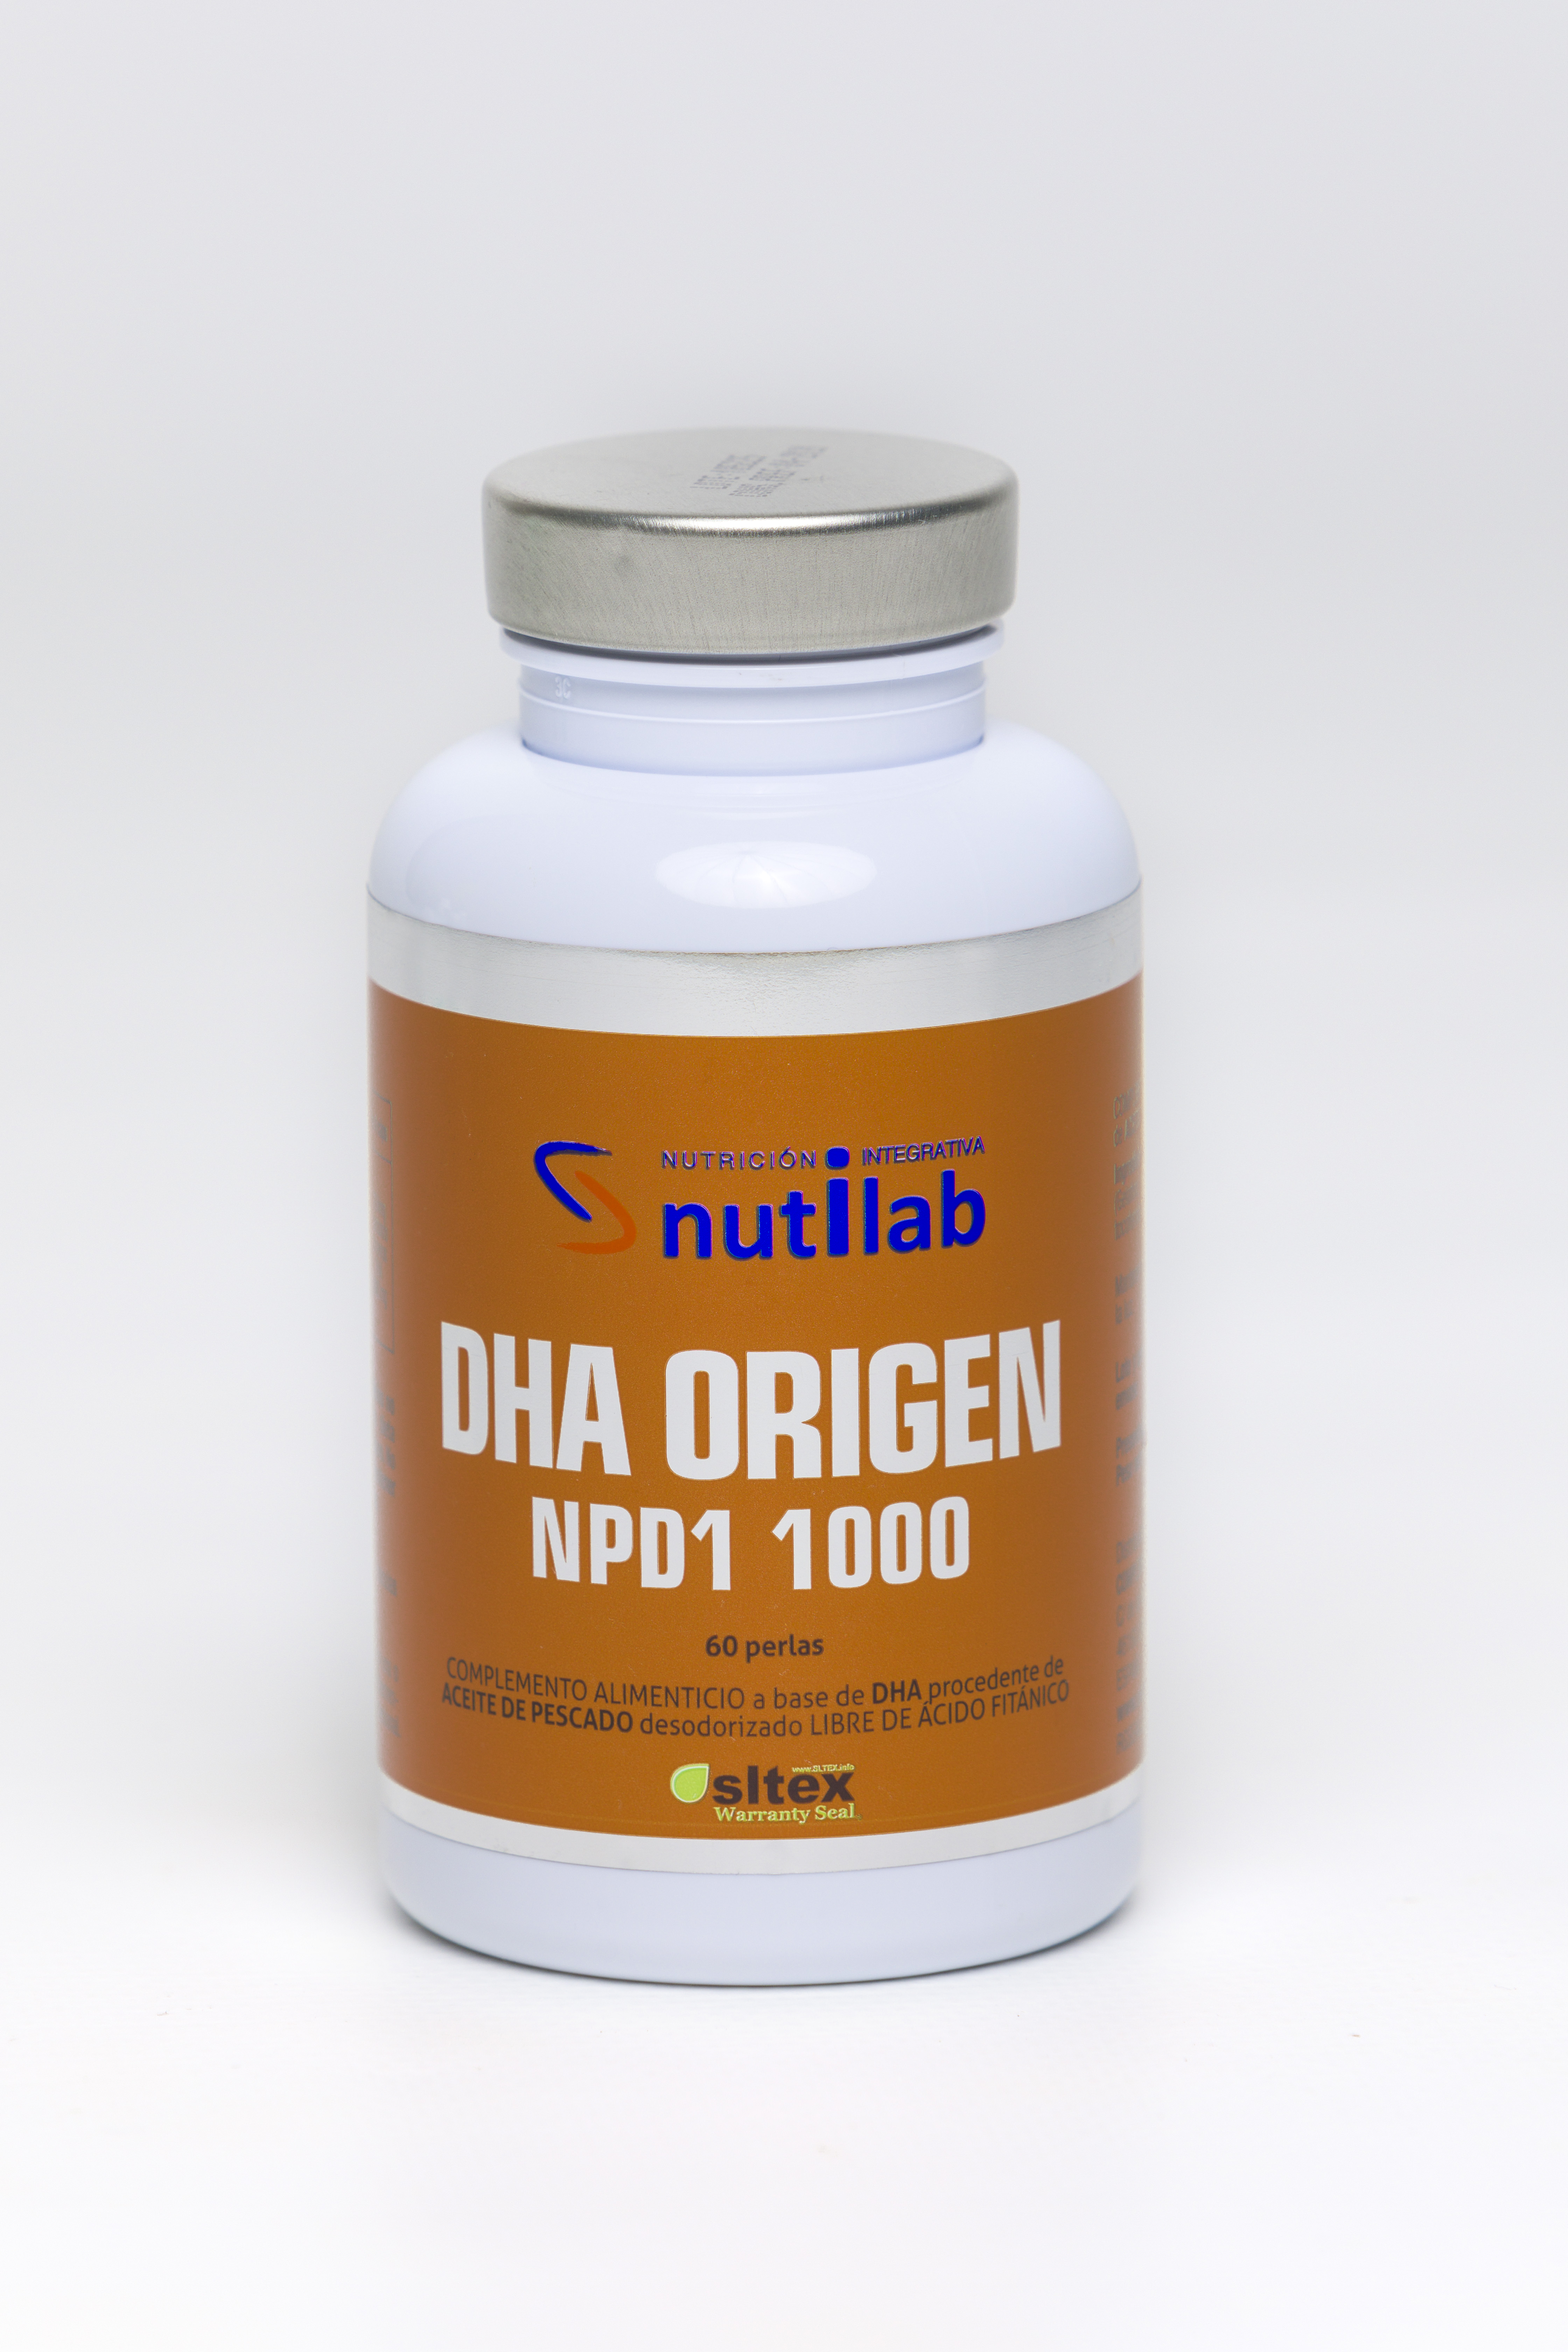 Nutilab DHA Origen NPD1 1000, 60 Perlas A base de aceite de pescado